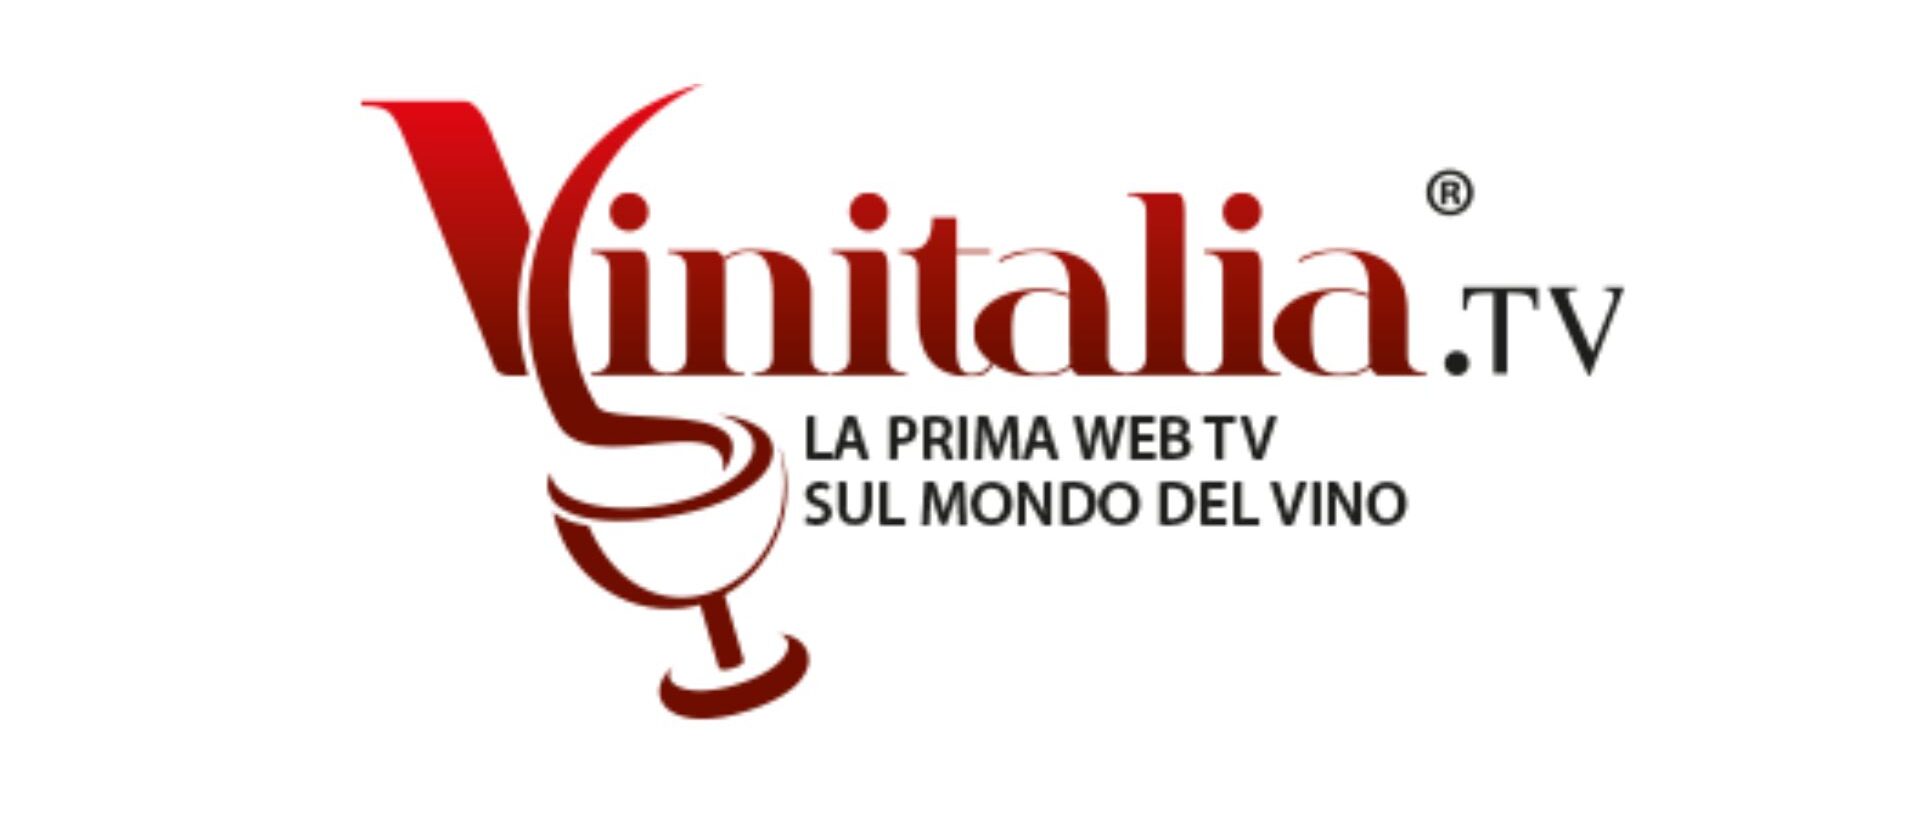 Vinitalia tv